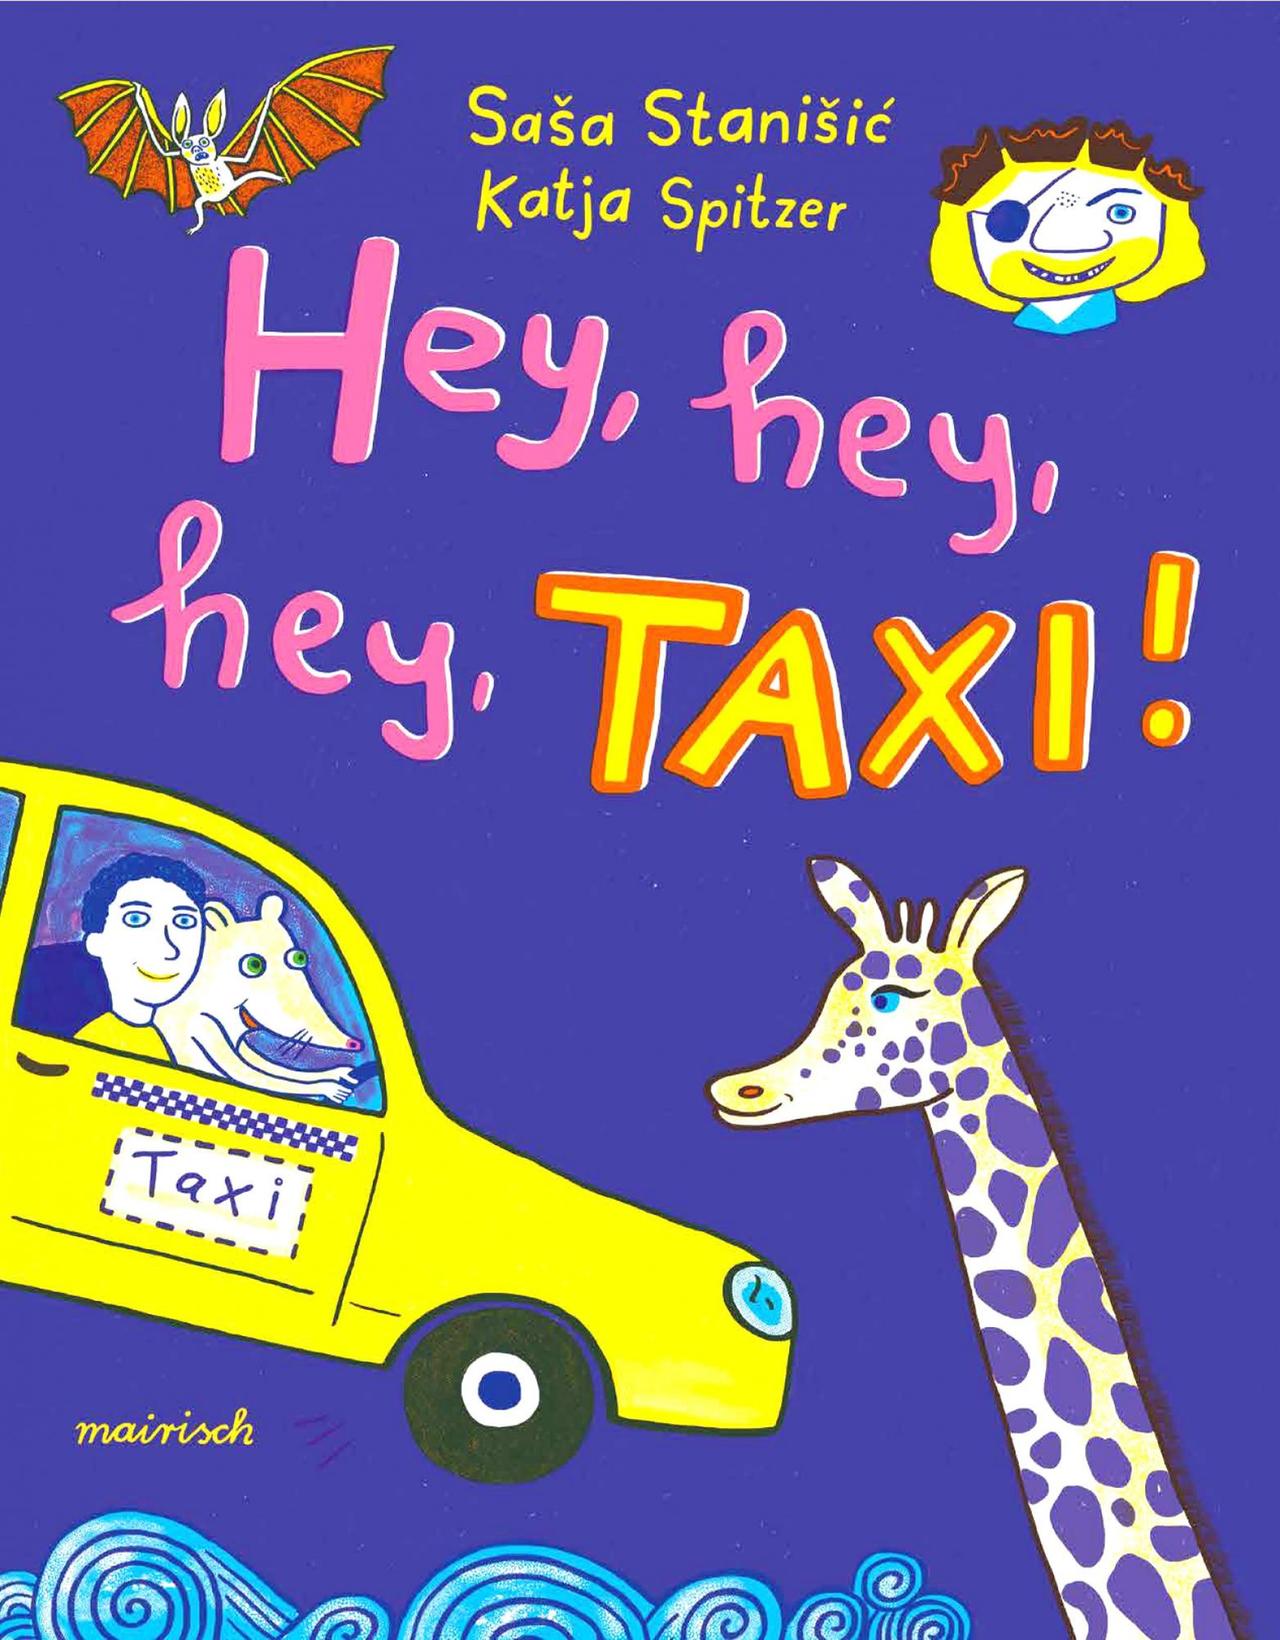 Saša Stanišić und Katja Spitzer (Illustration): "Hey, hey, hey, TAXI!"(Mairisch Verlag, Hamburg)
Buchcover